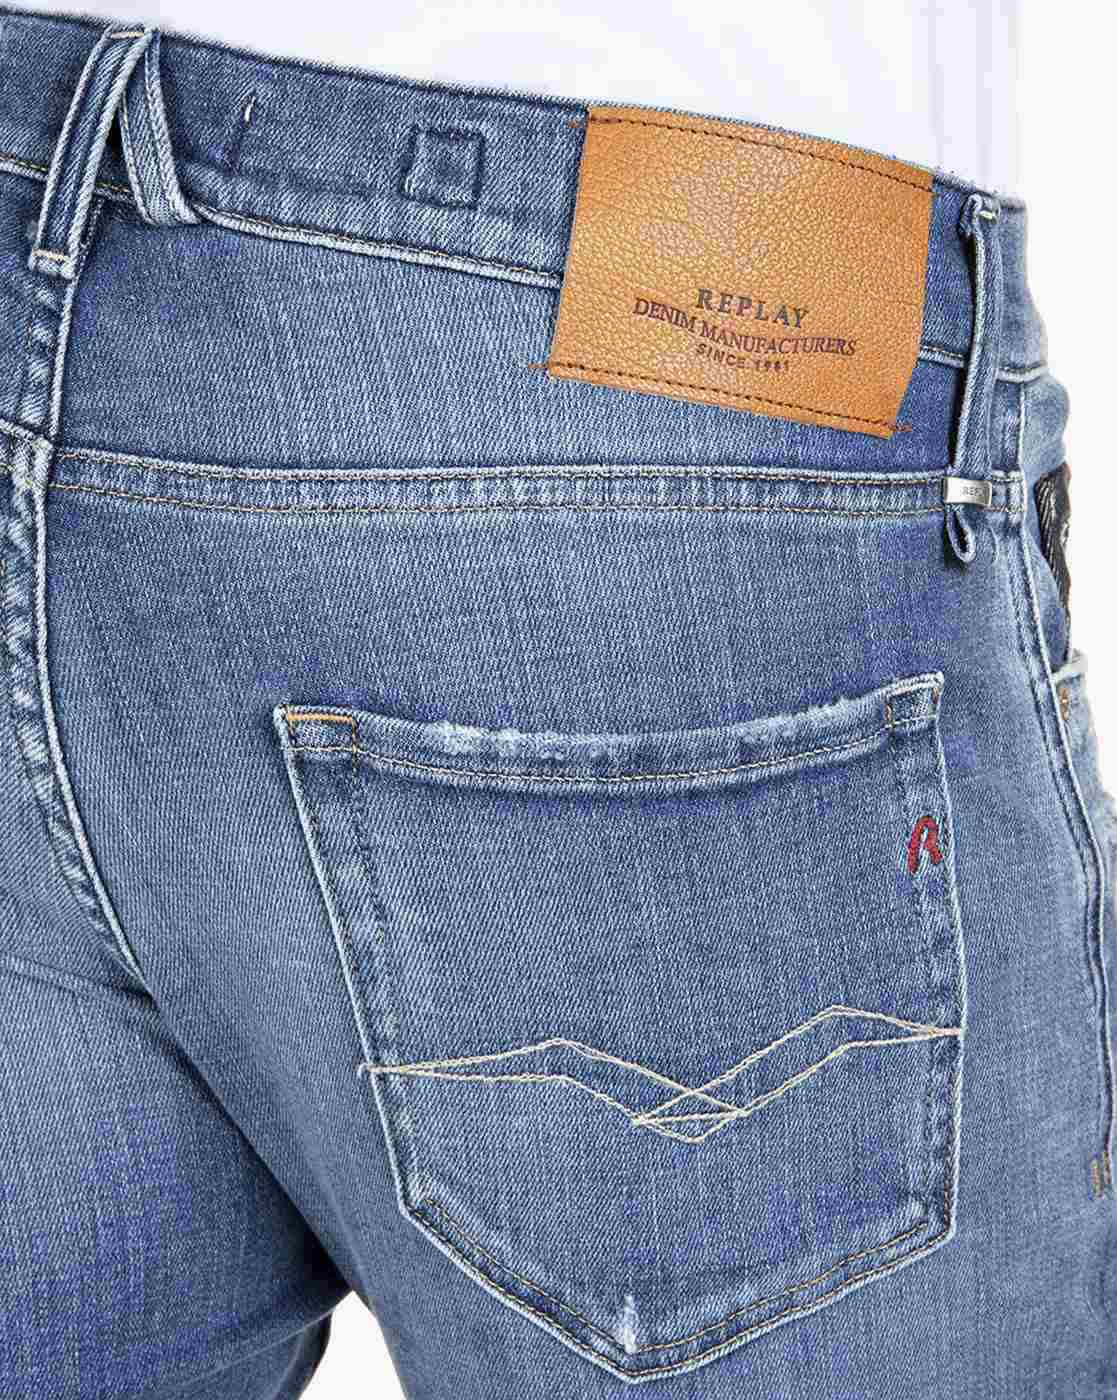 Replay Jeans Skar Straight Leg Regular Fit Button Fly Medium Wash 30x33.5 -  Etsy